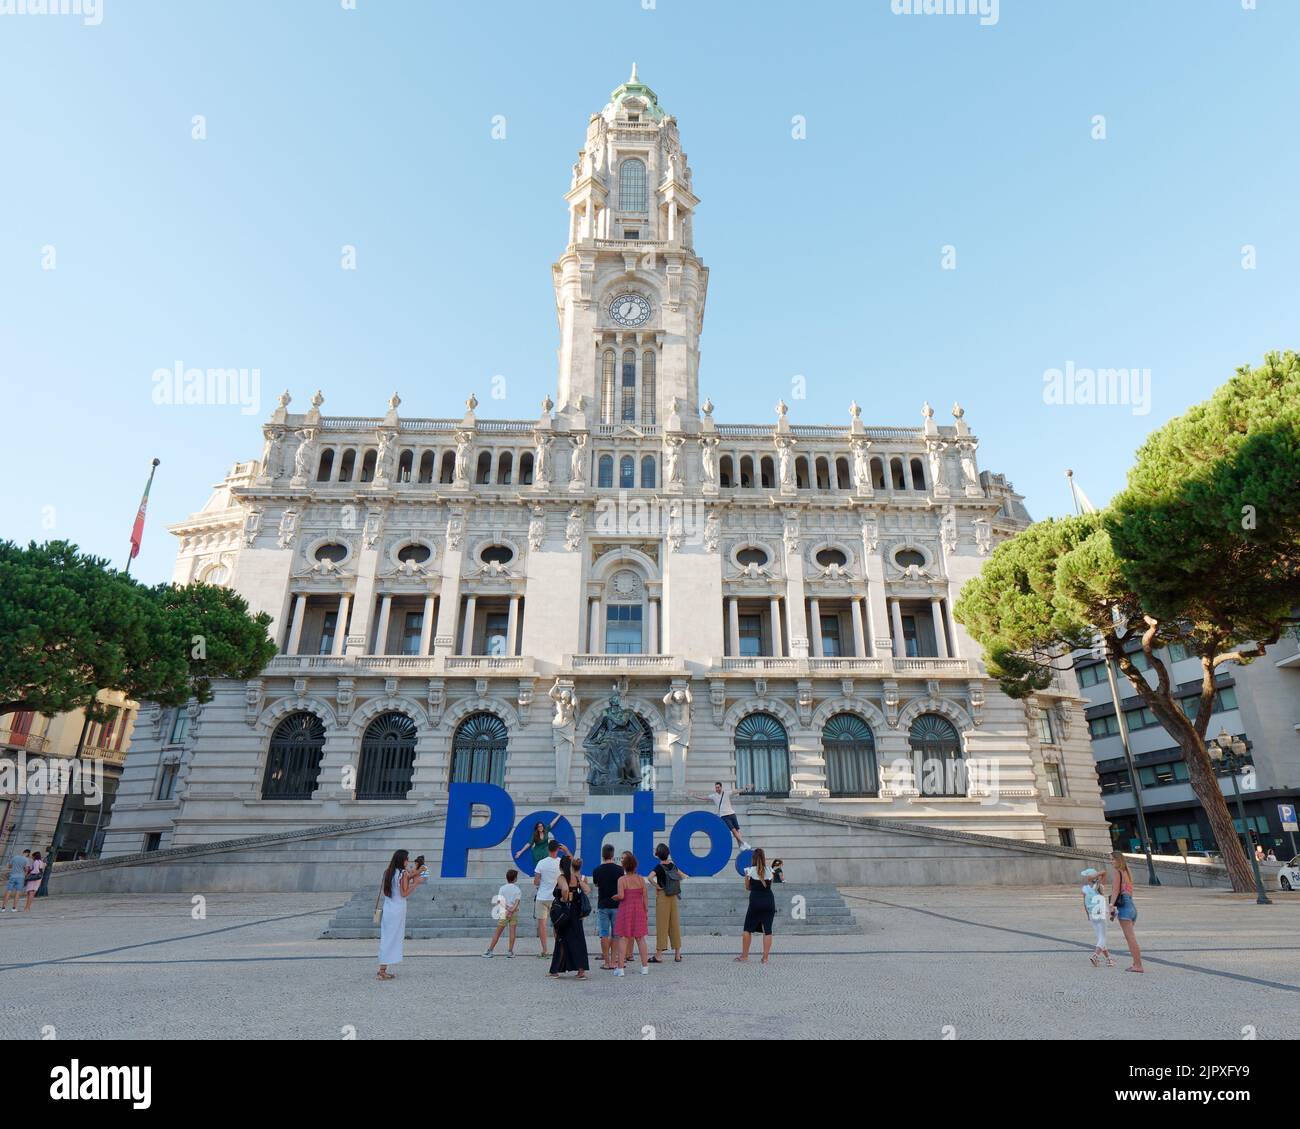 Das Câmara Municipal (Rathaus) am Ende der Avenida dos Aliados (Allee der Alliierten). Touristen machen Fotos vor dem großen blauen Porto-Schild. Stockfoto